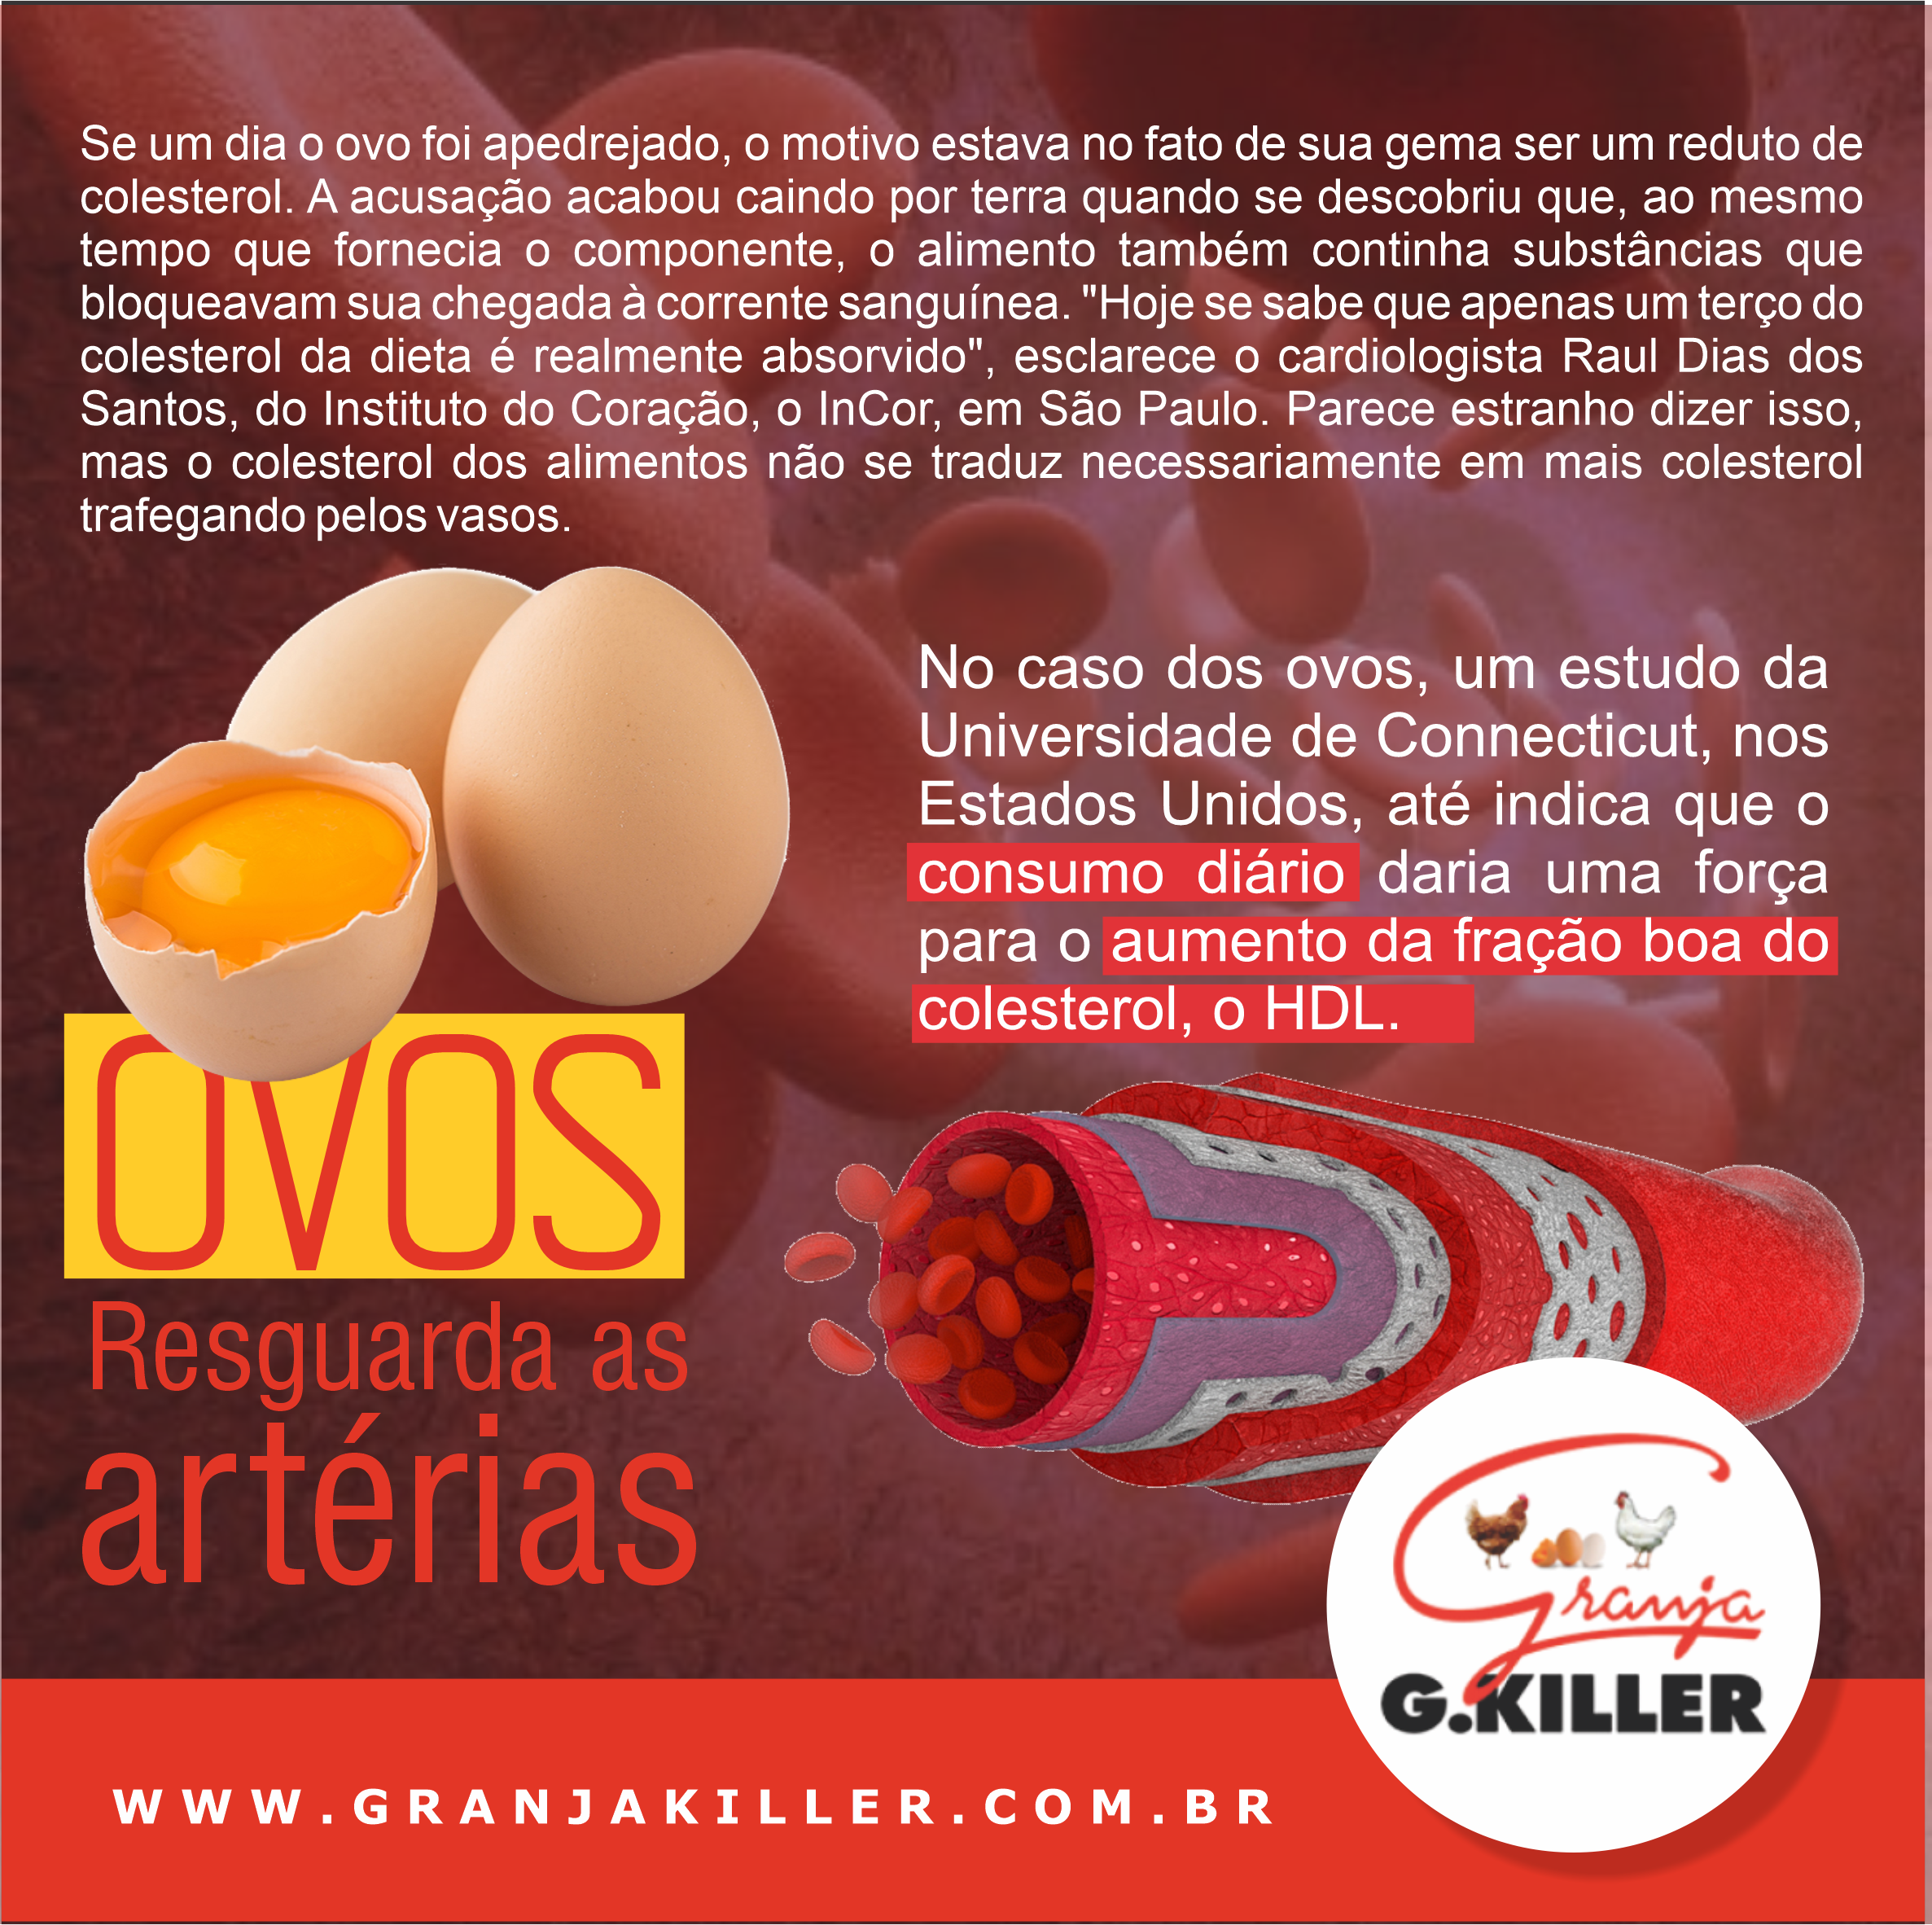 Ovos Resguarda as artérias